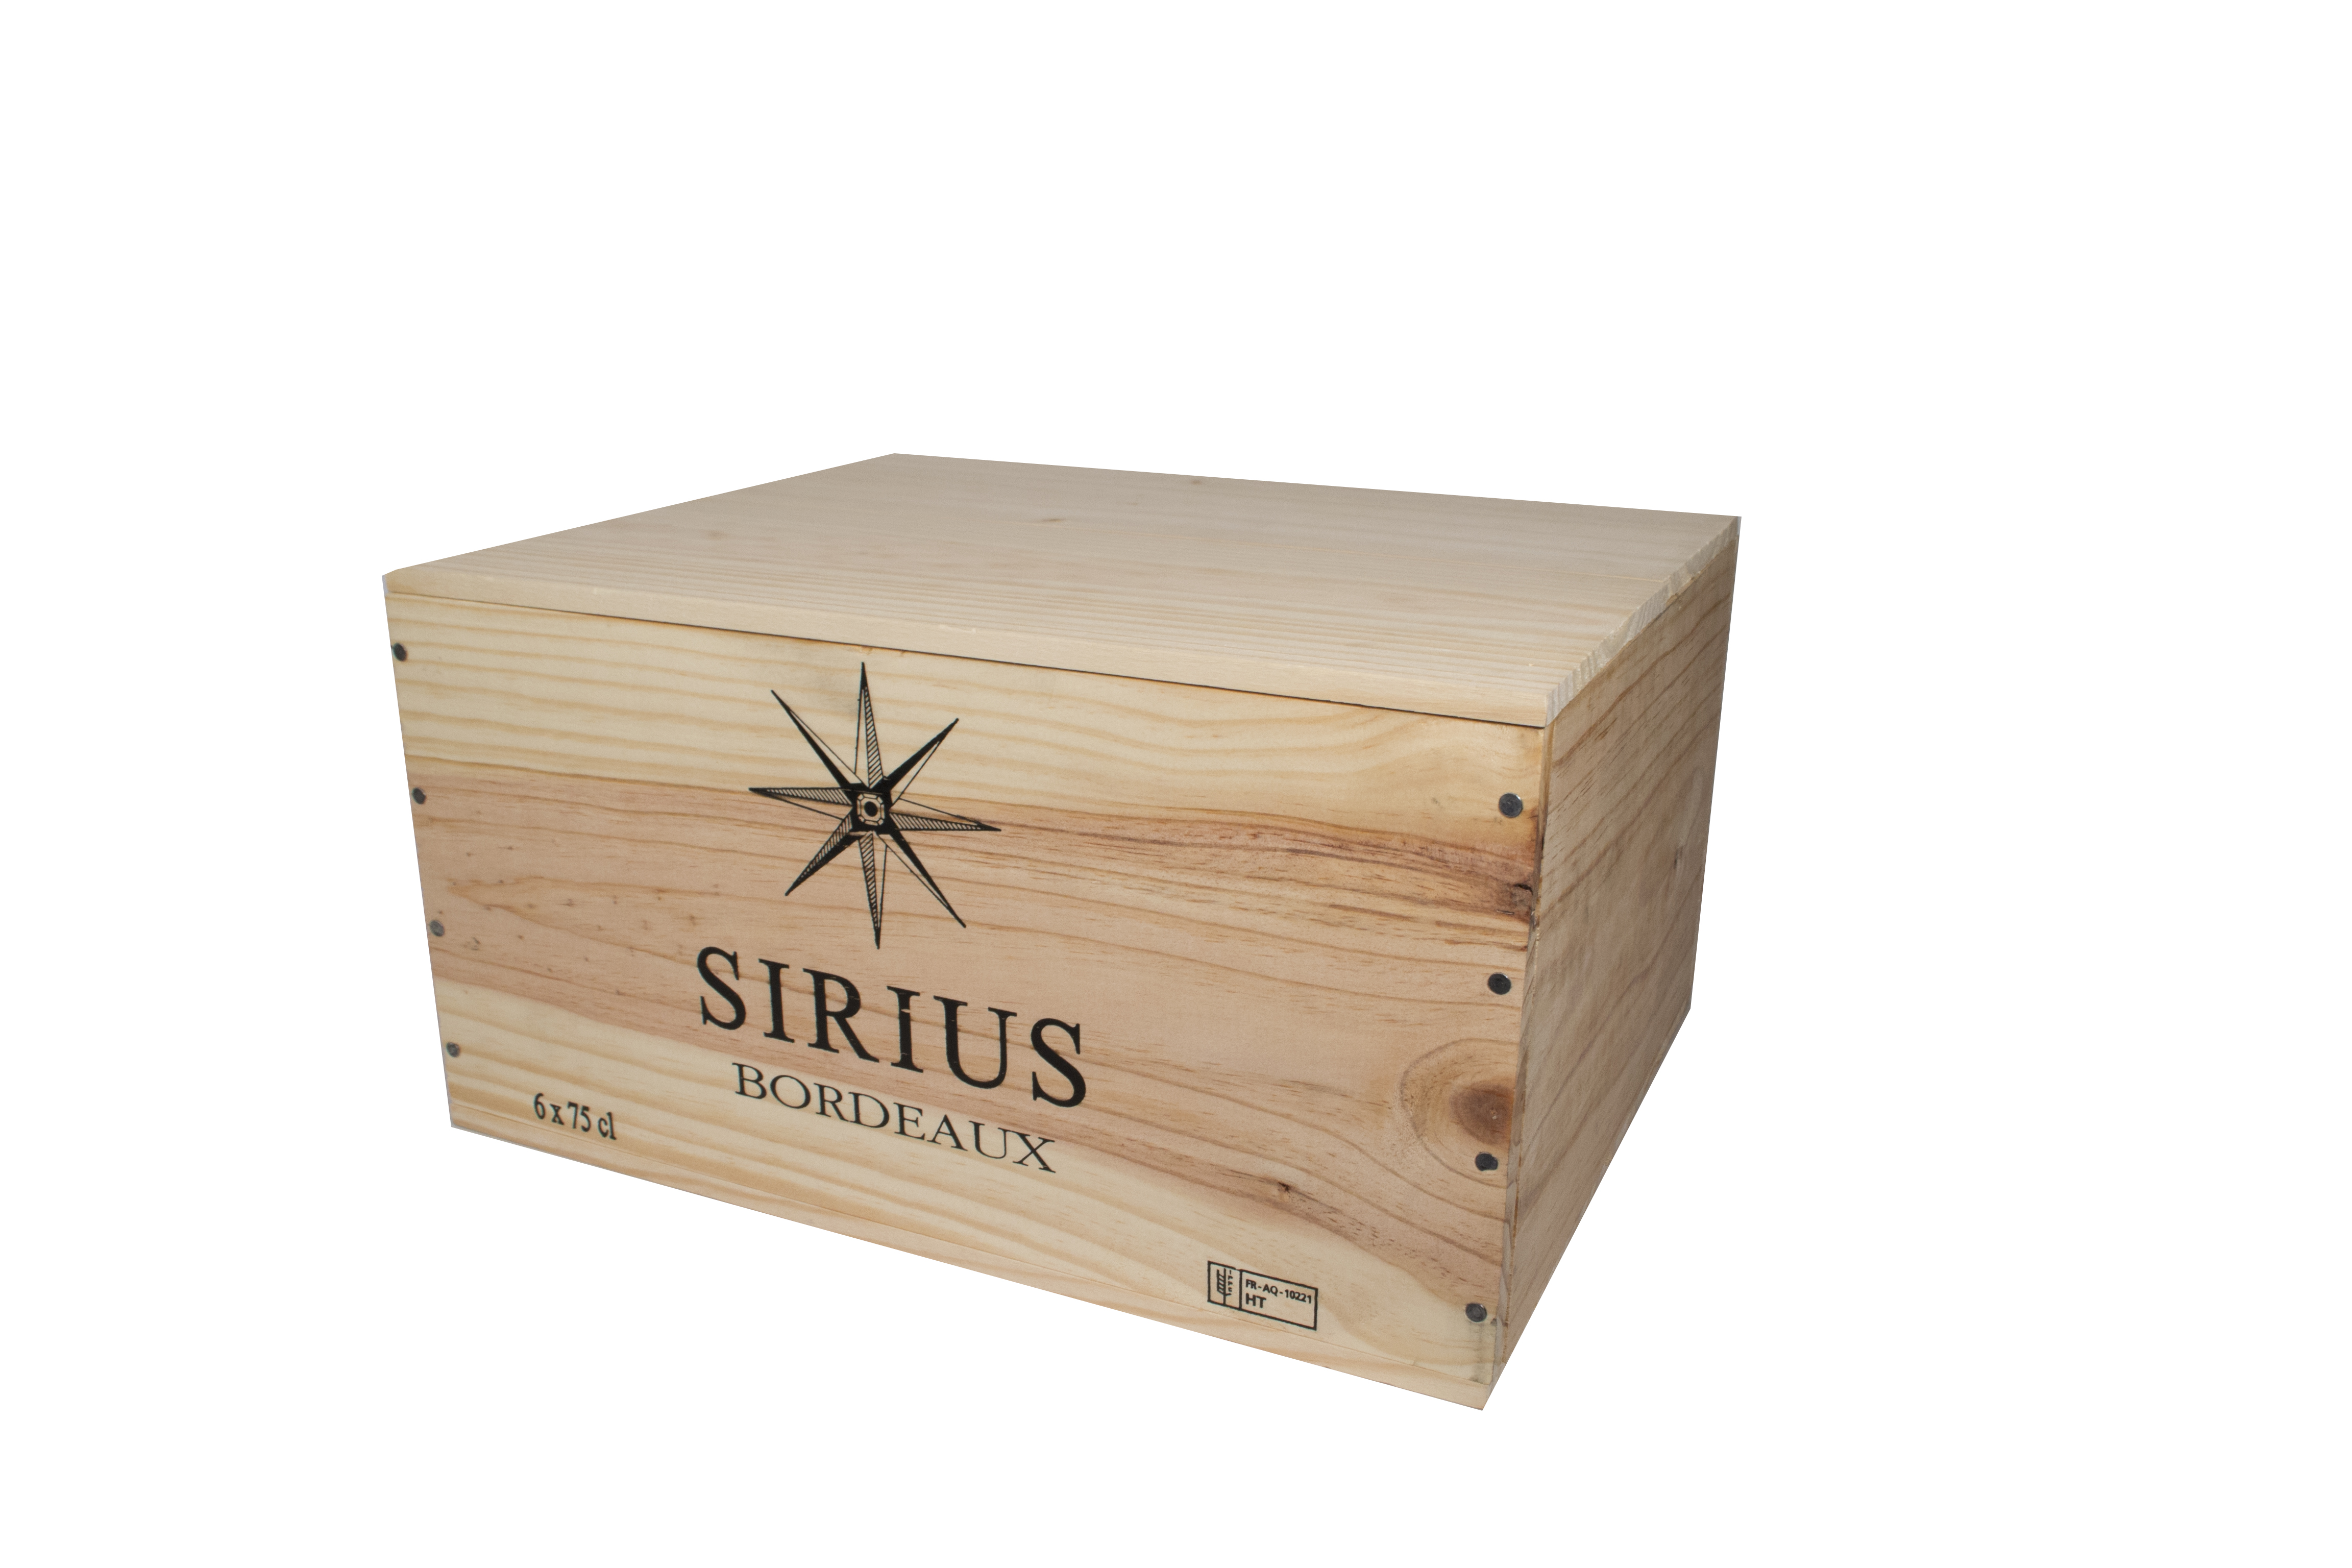 Sirius AOC Bordeaux White 2020